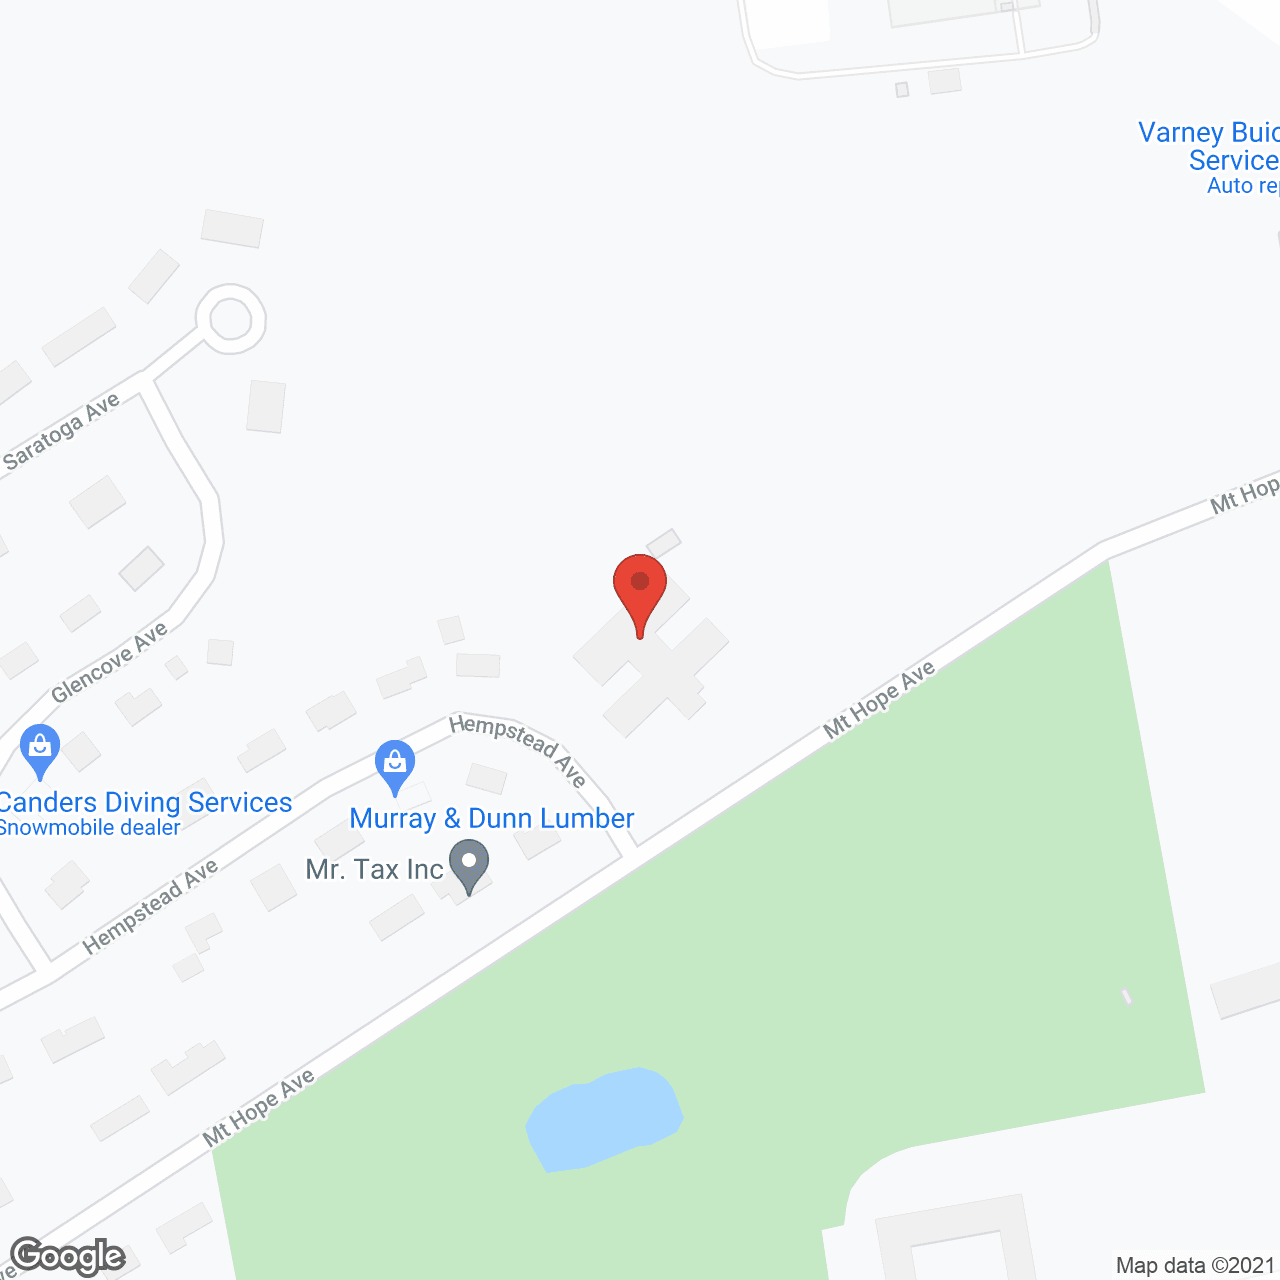 Eastside Rehabilitation and Living Center in google map